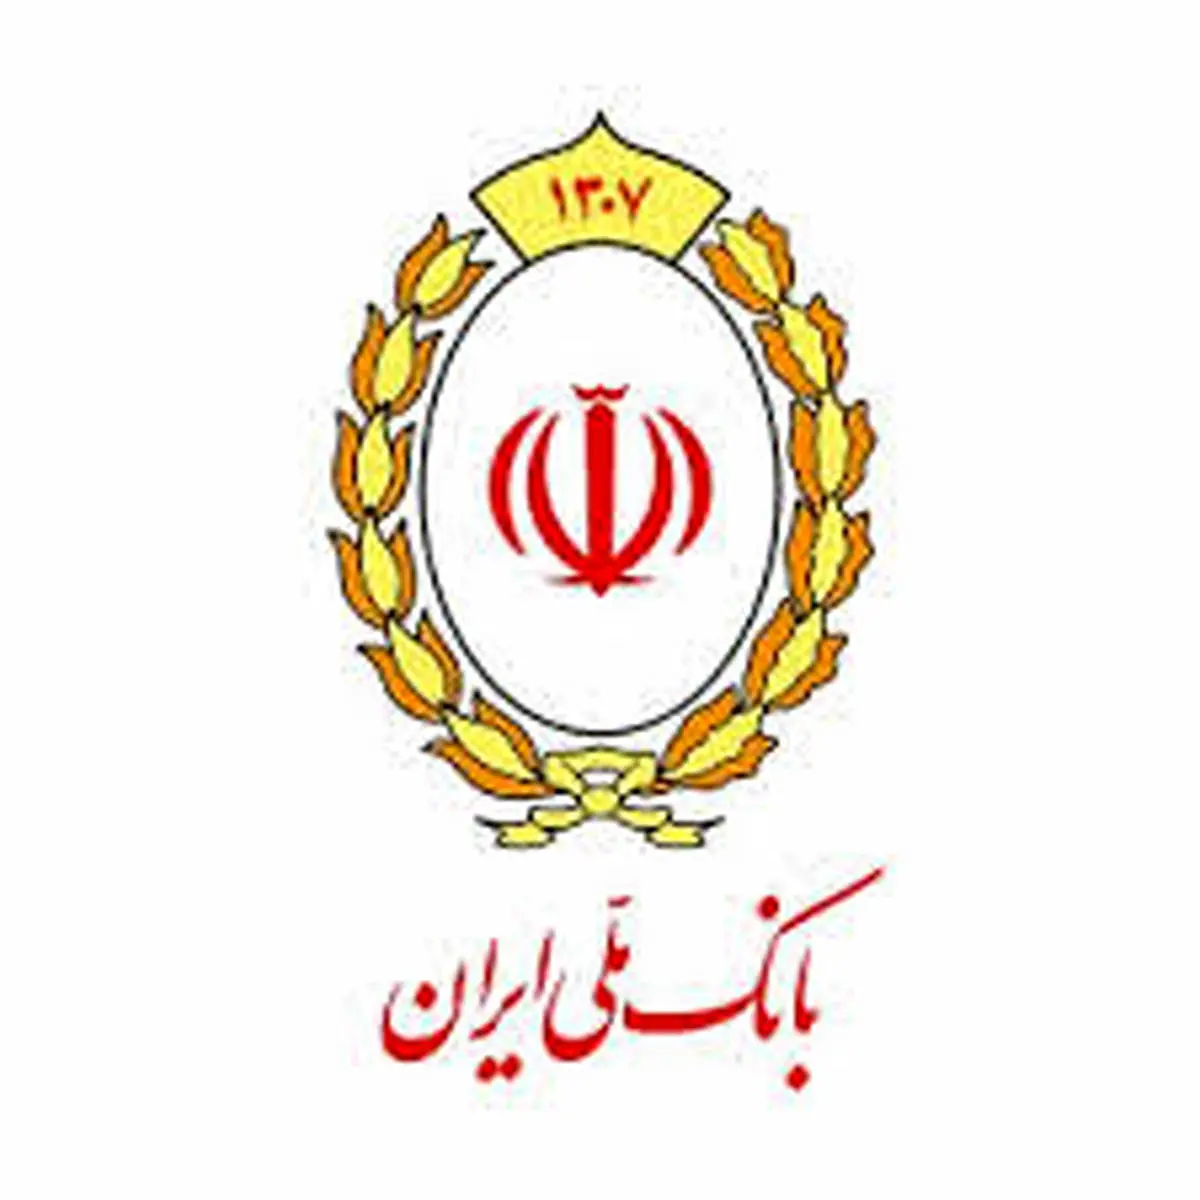 تصاحب بازار تولید خاورمیانه با حمایت های بانک ملی ایران

